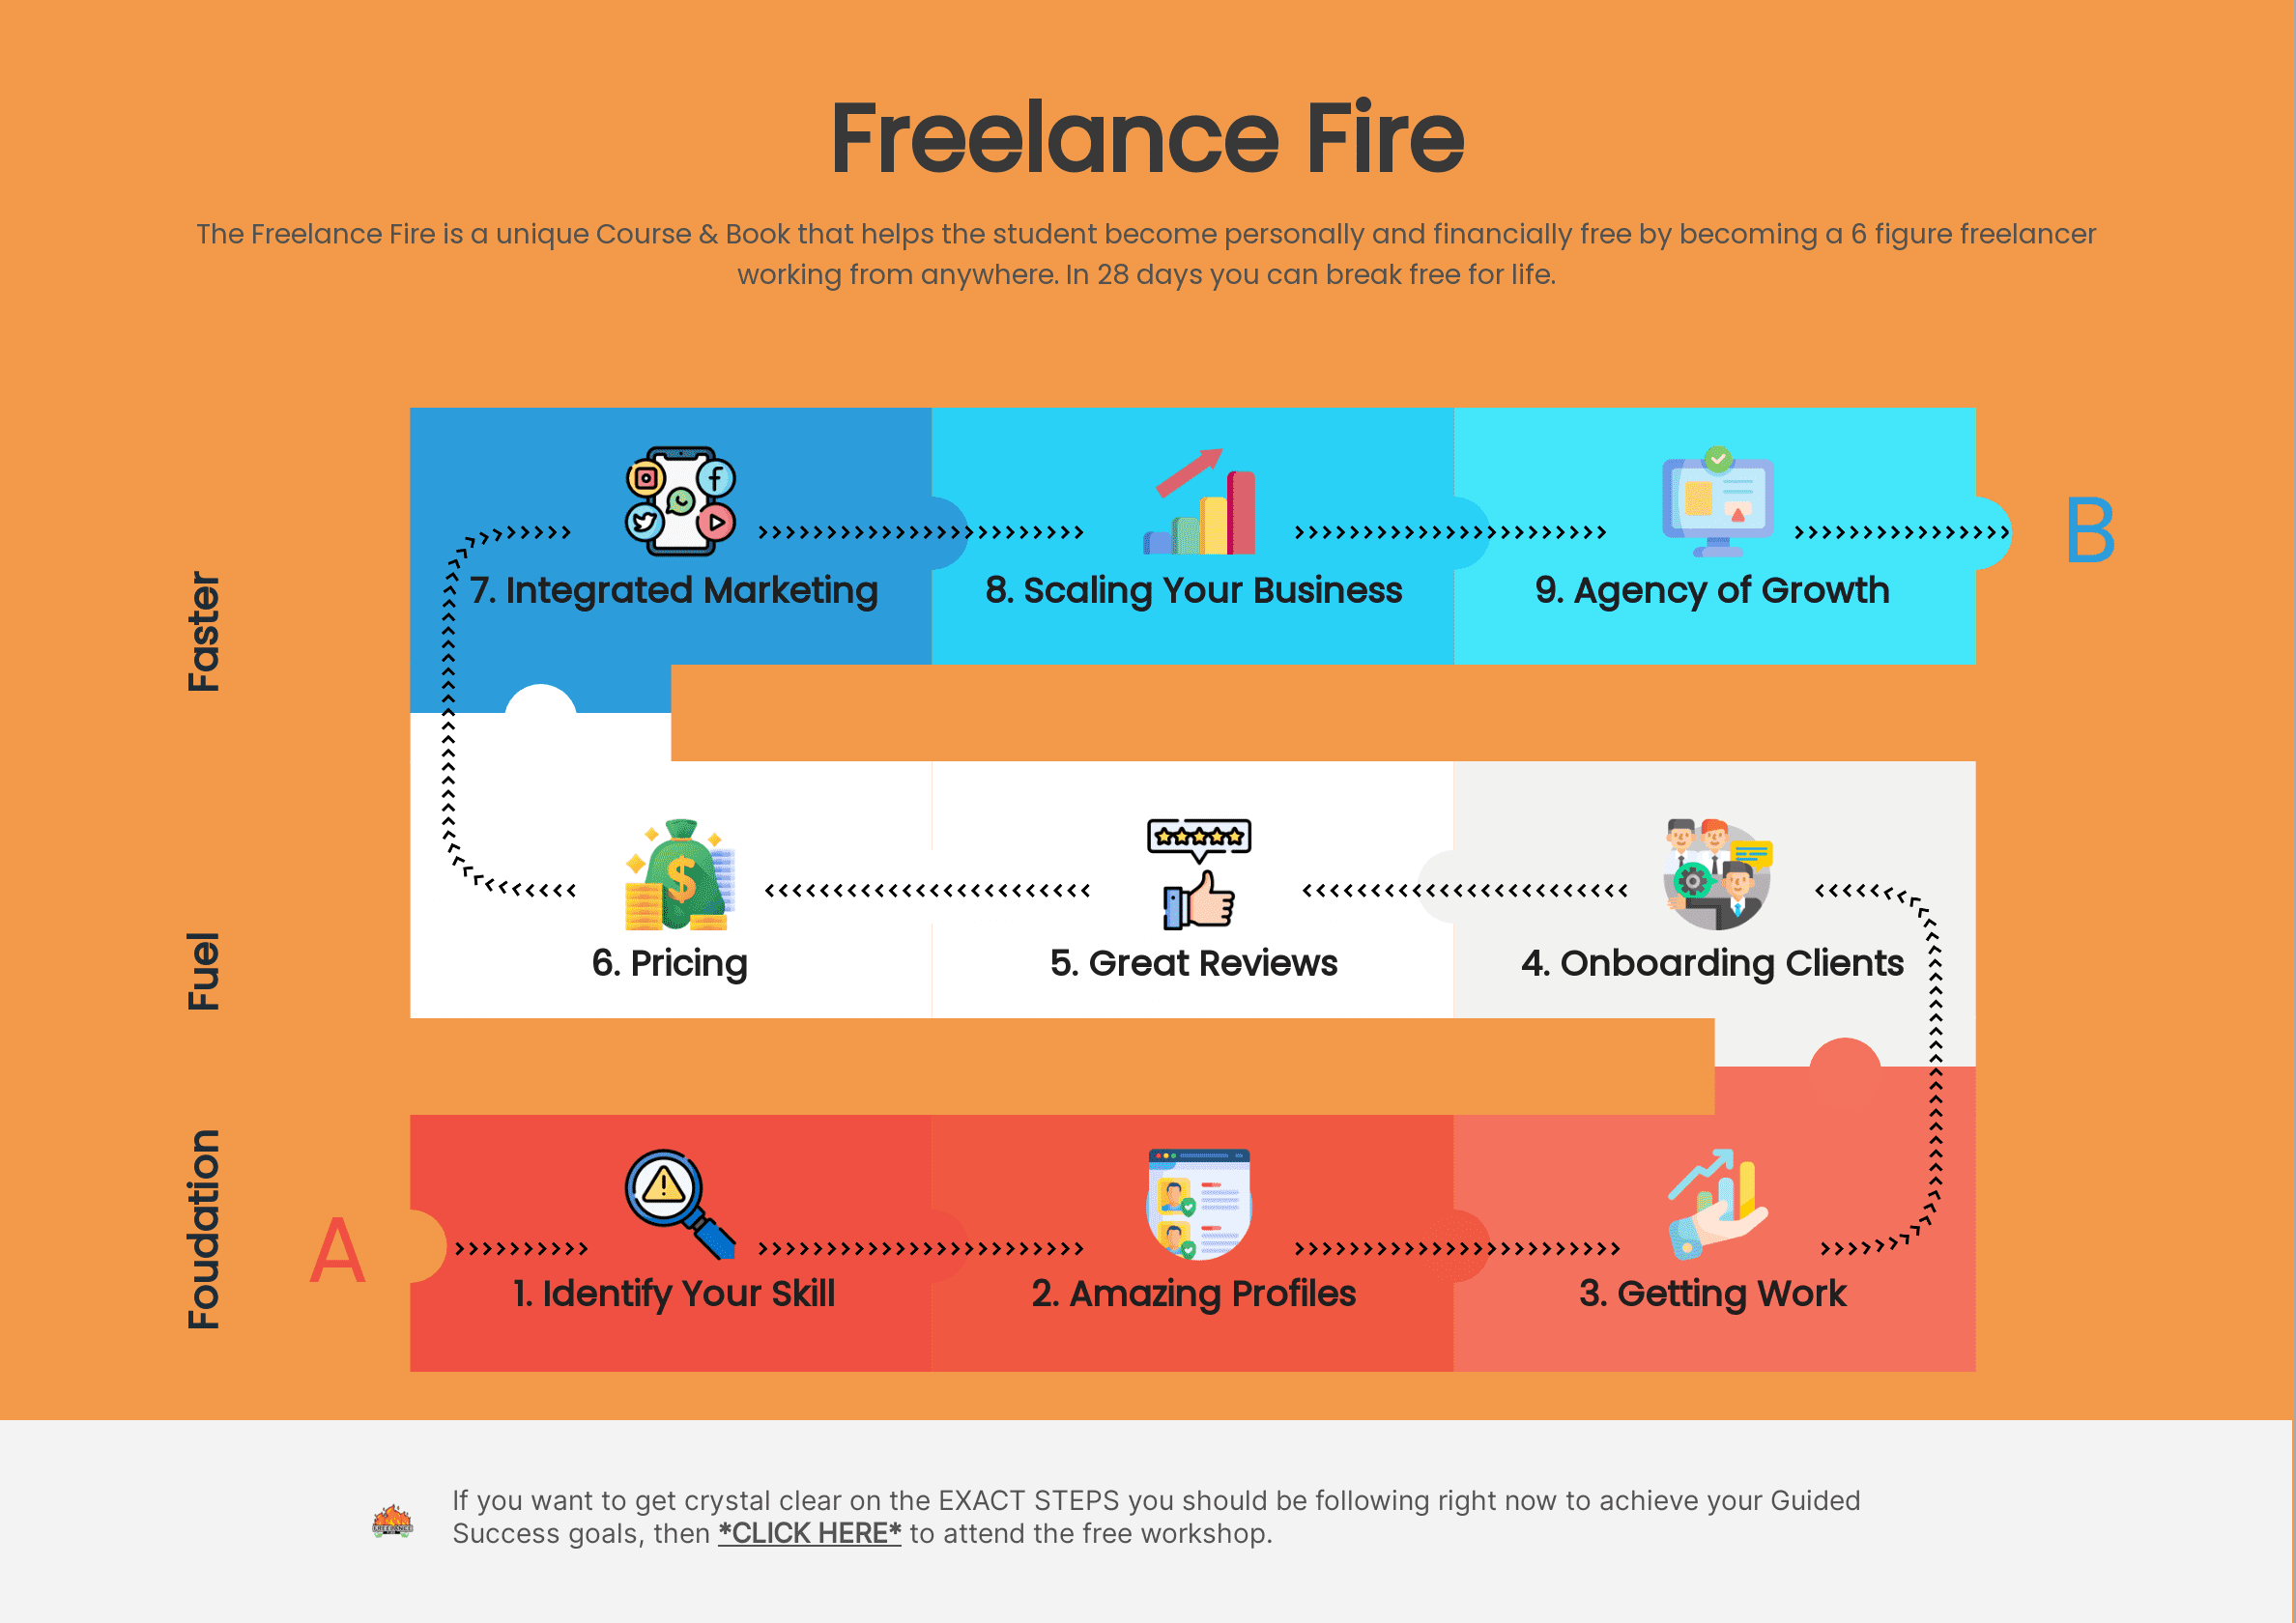 The Freelance Fire Roadmap